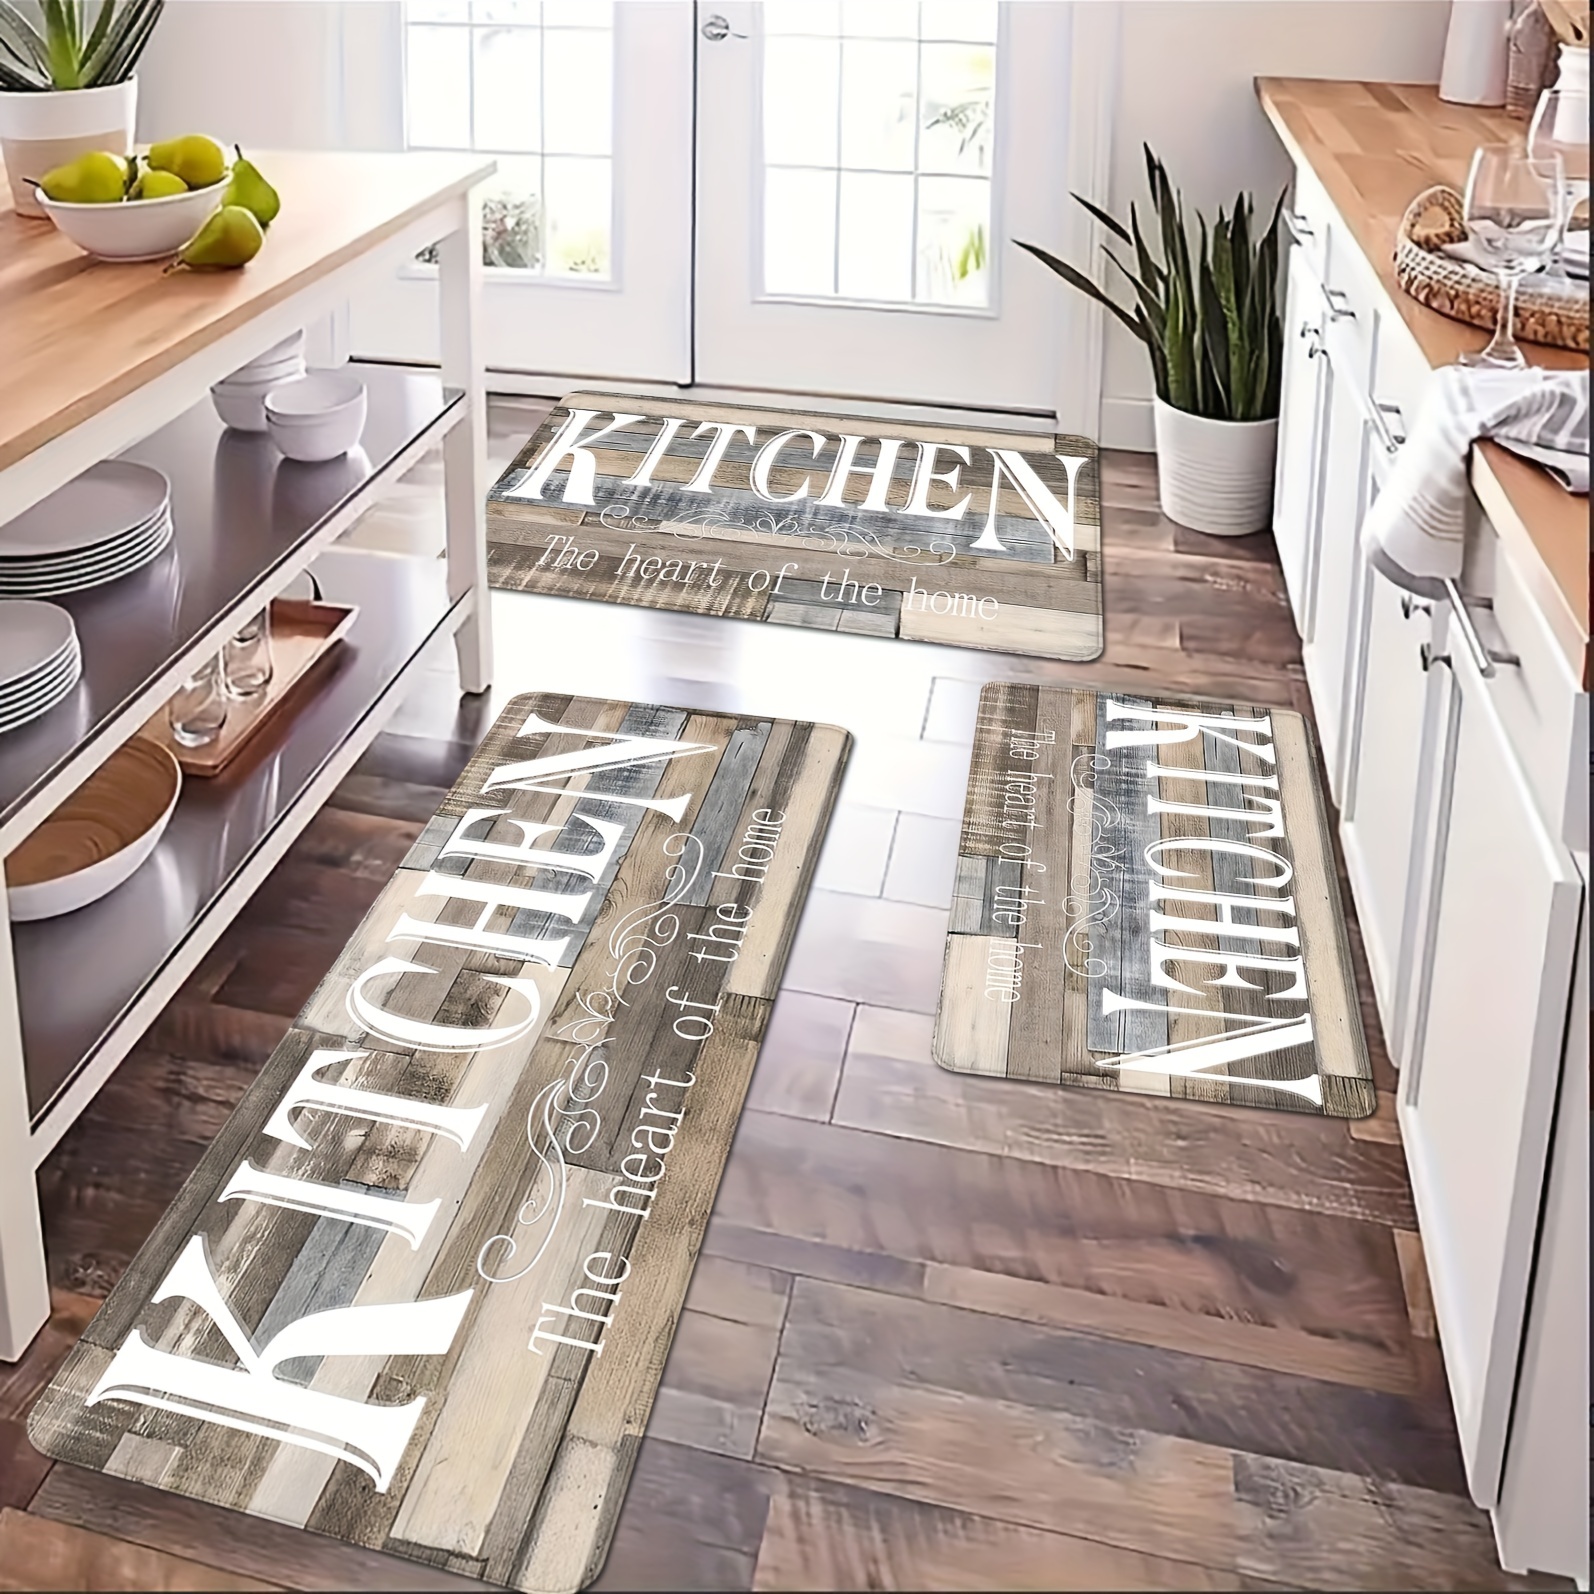 Kitchen Utensils Printing Floor Mat Home Kitchen Non slip - Temu